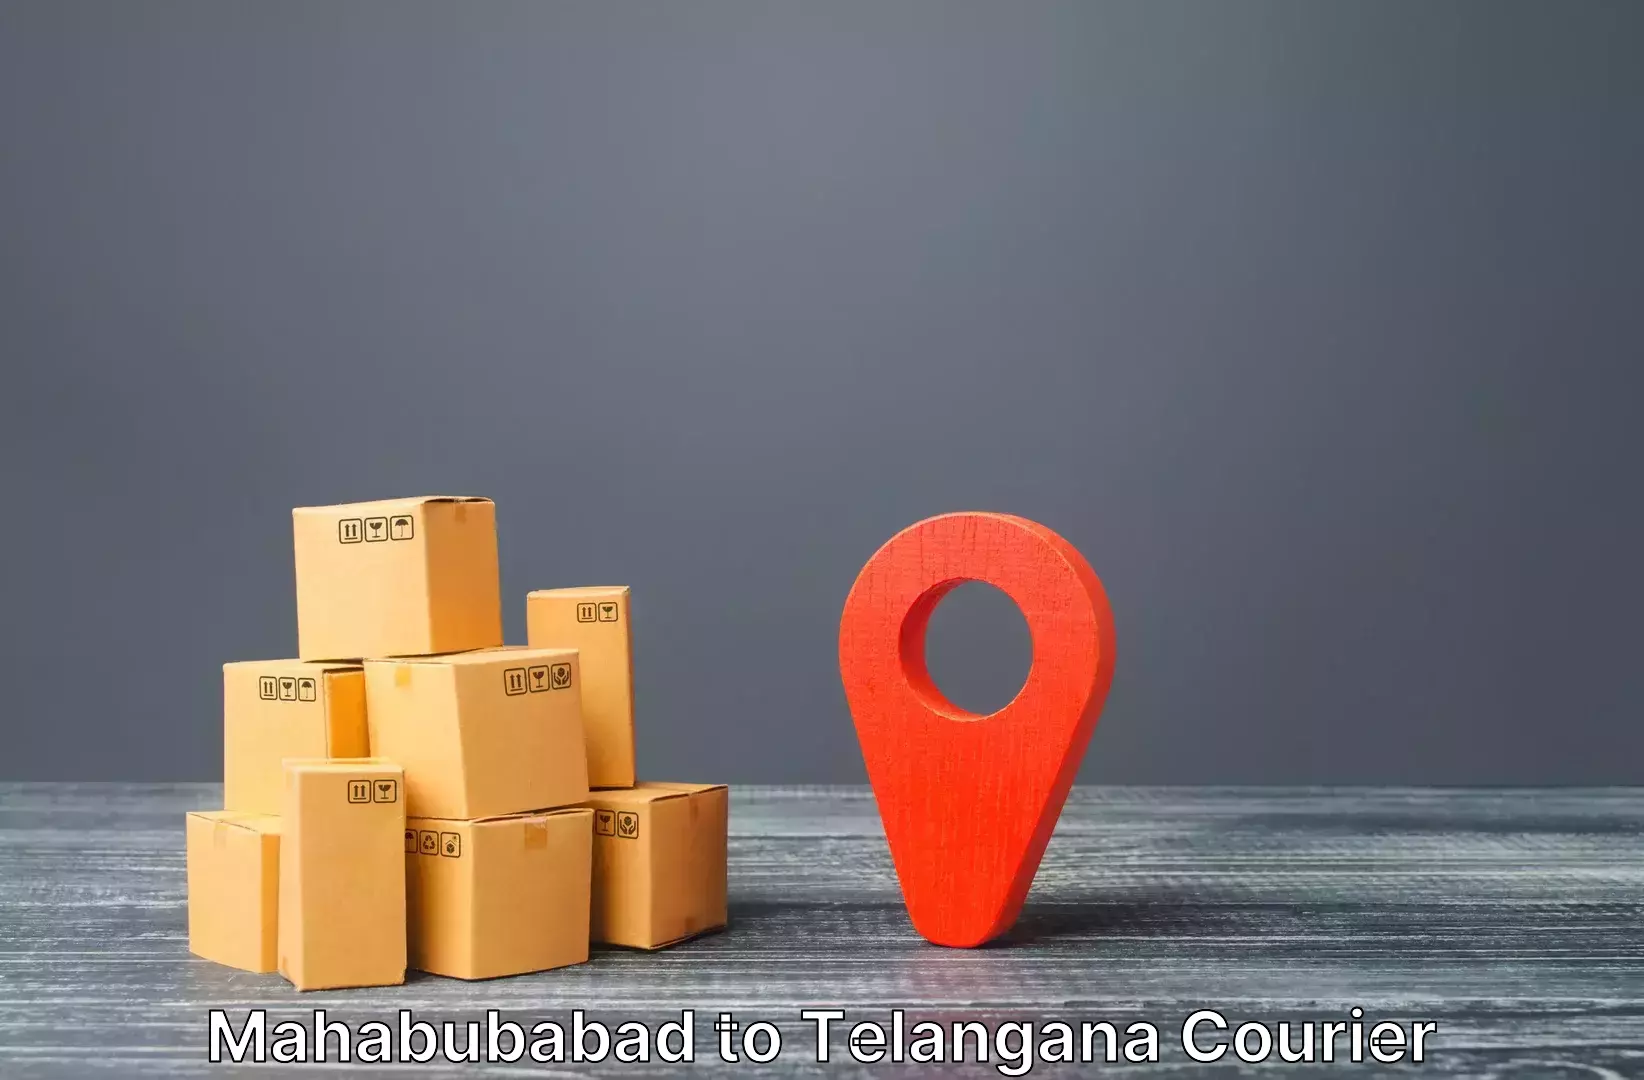 Baggage shipping service in Mahabubabad to Netrang